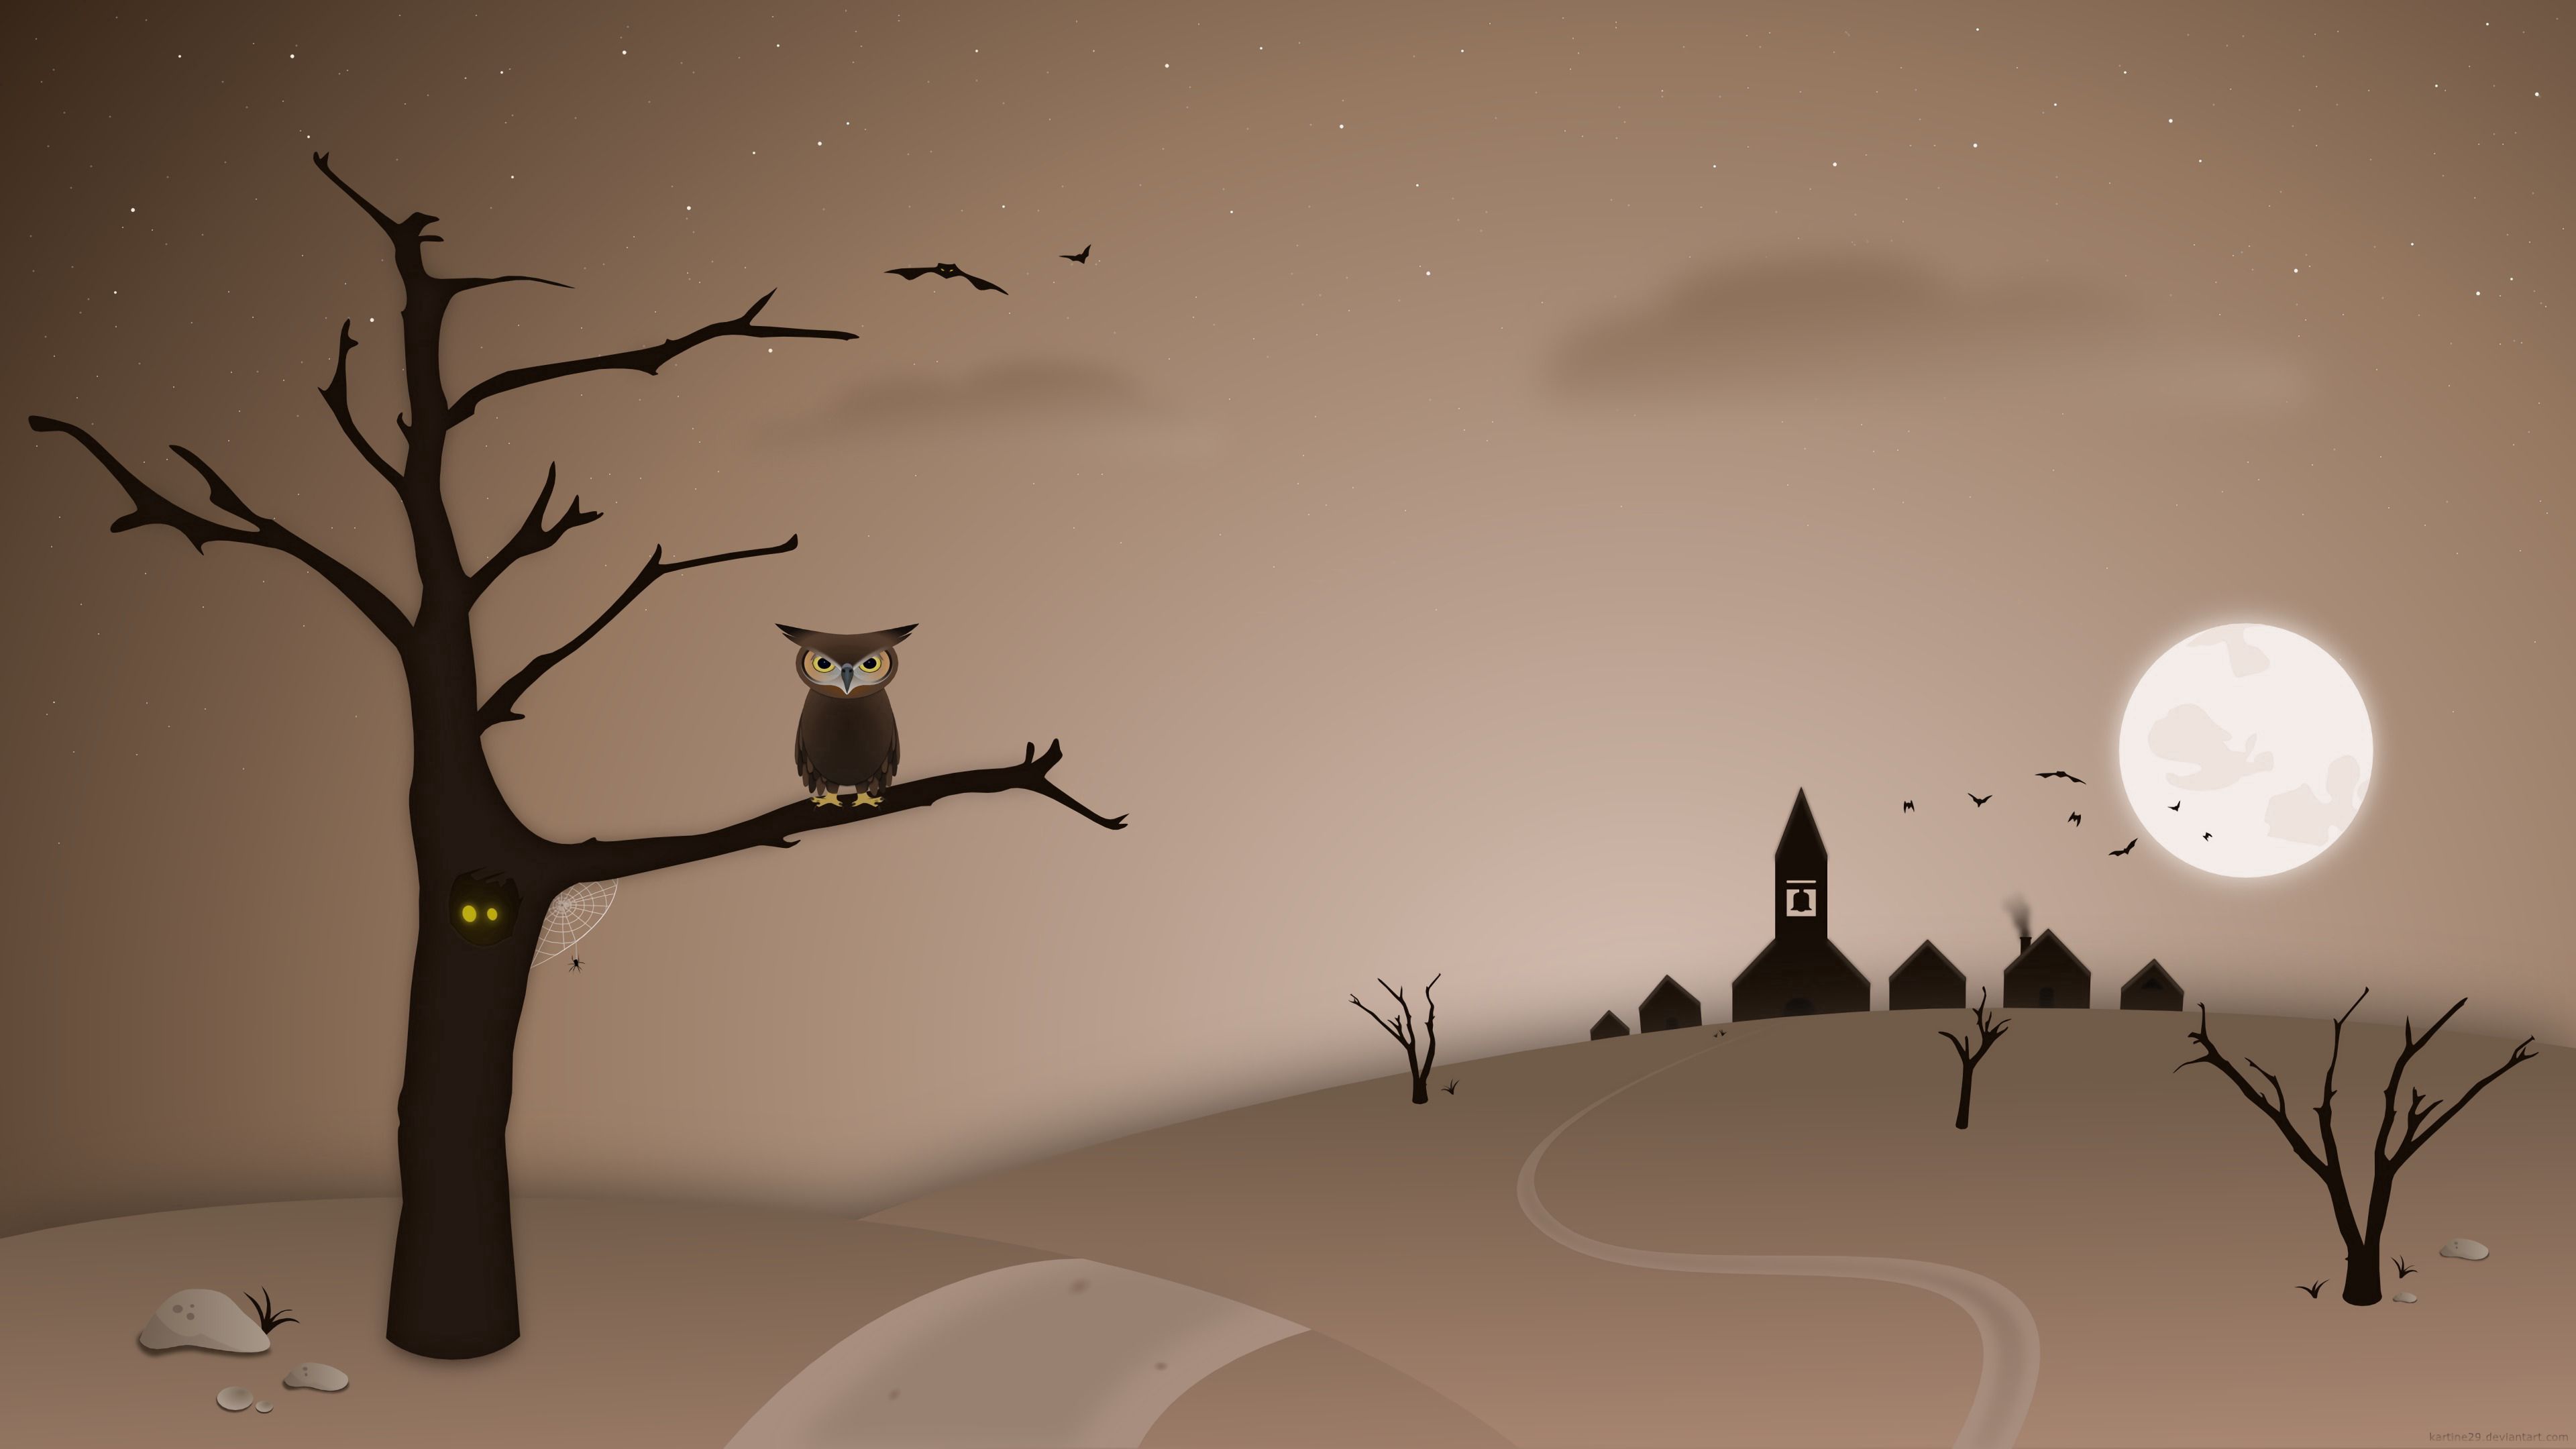 vector, art, bird, night, owl, wood, tree Image for desktop